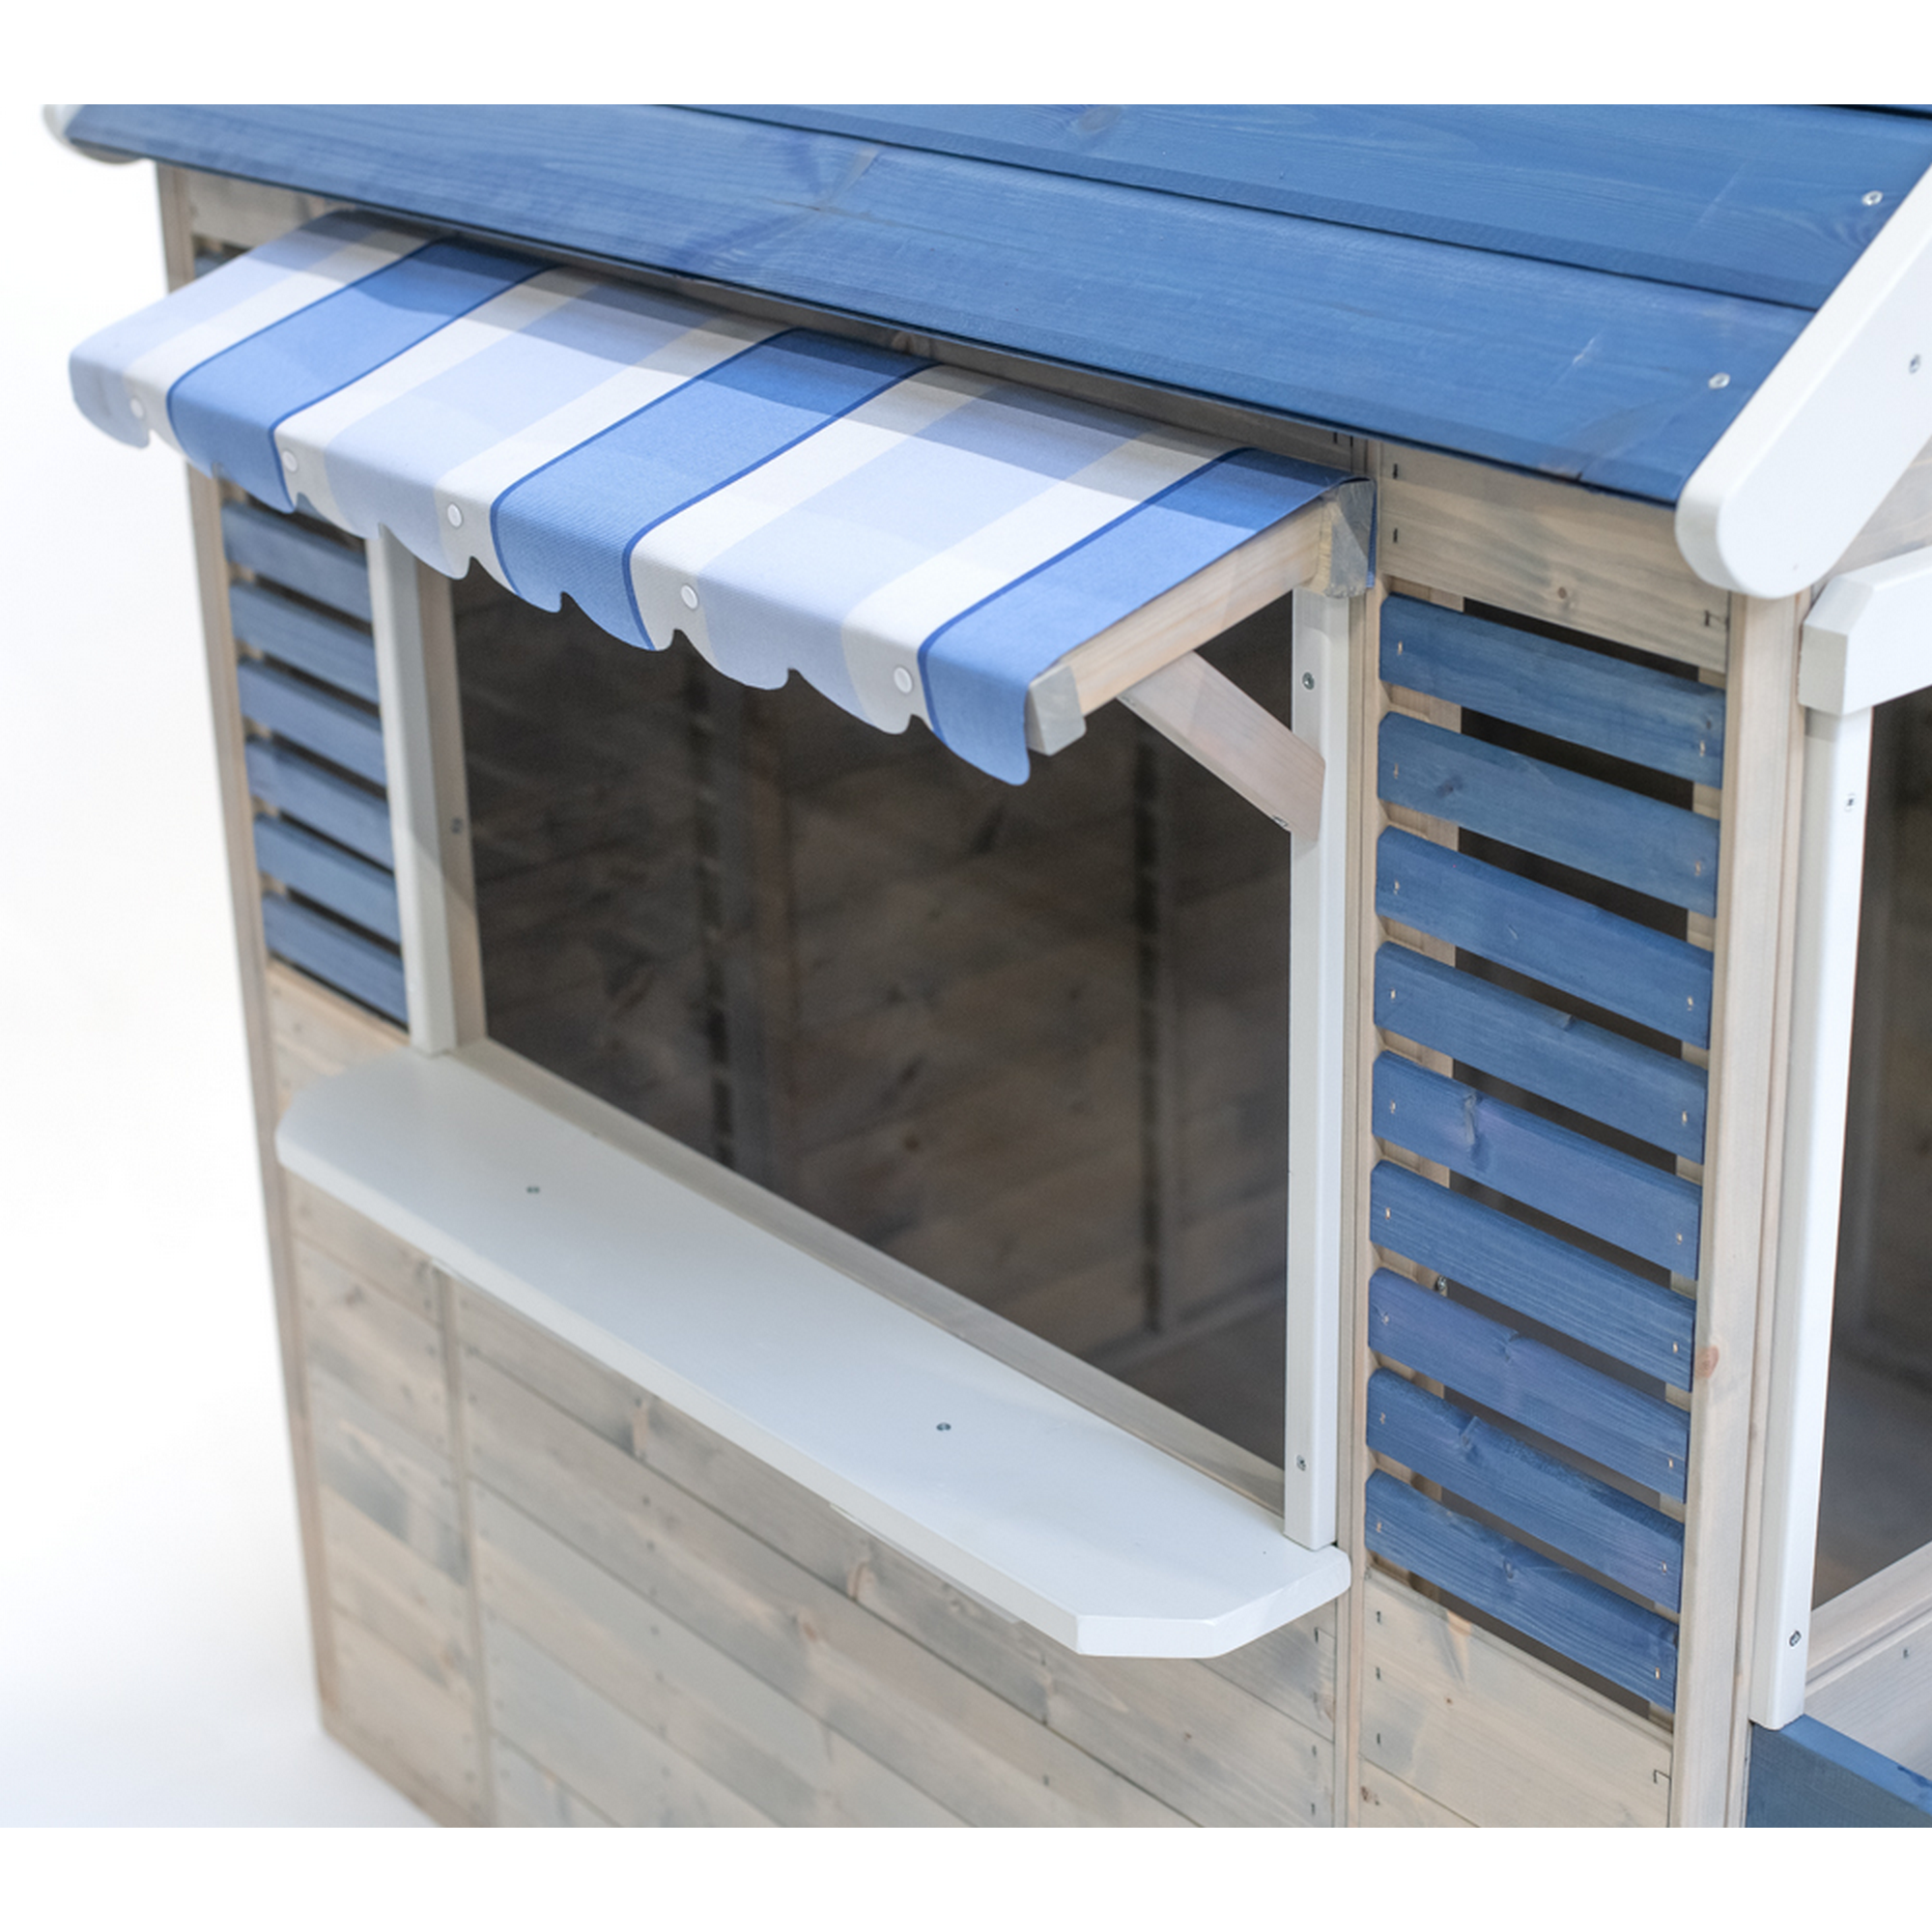 Holz-Spielhaus 'Delfin' natur/blau 120 x 120 x 155 cm + product picture